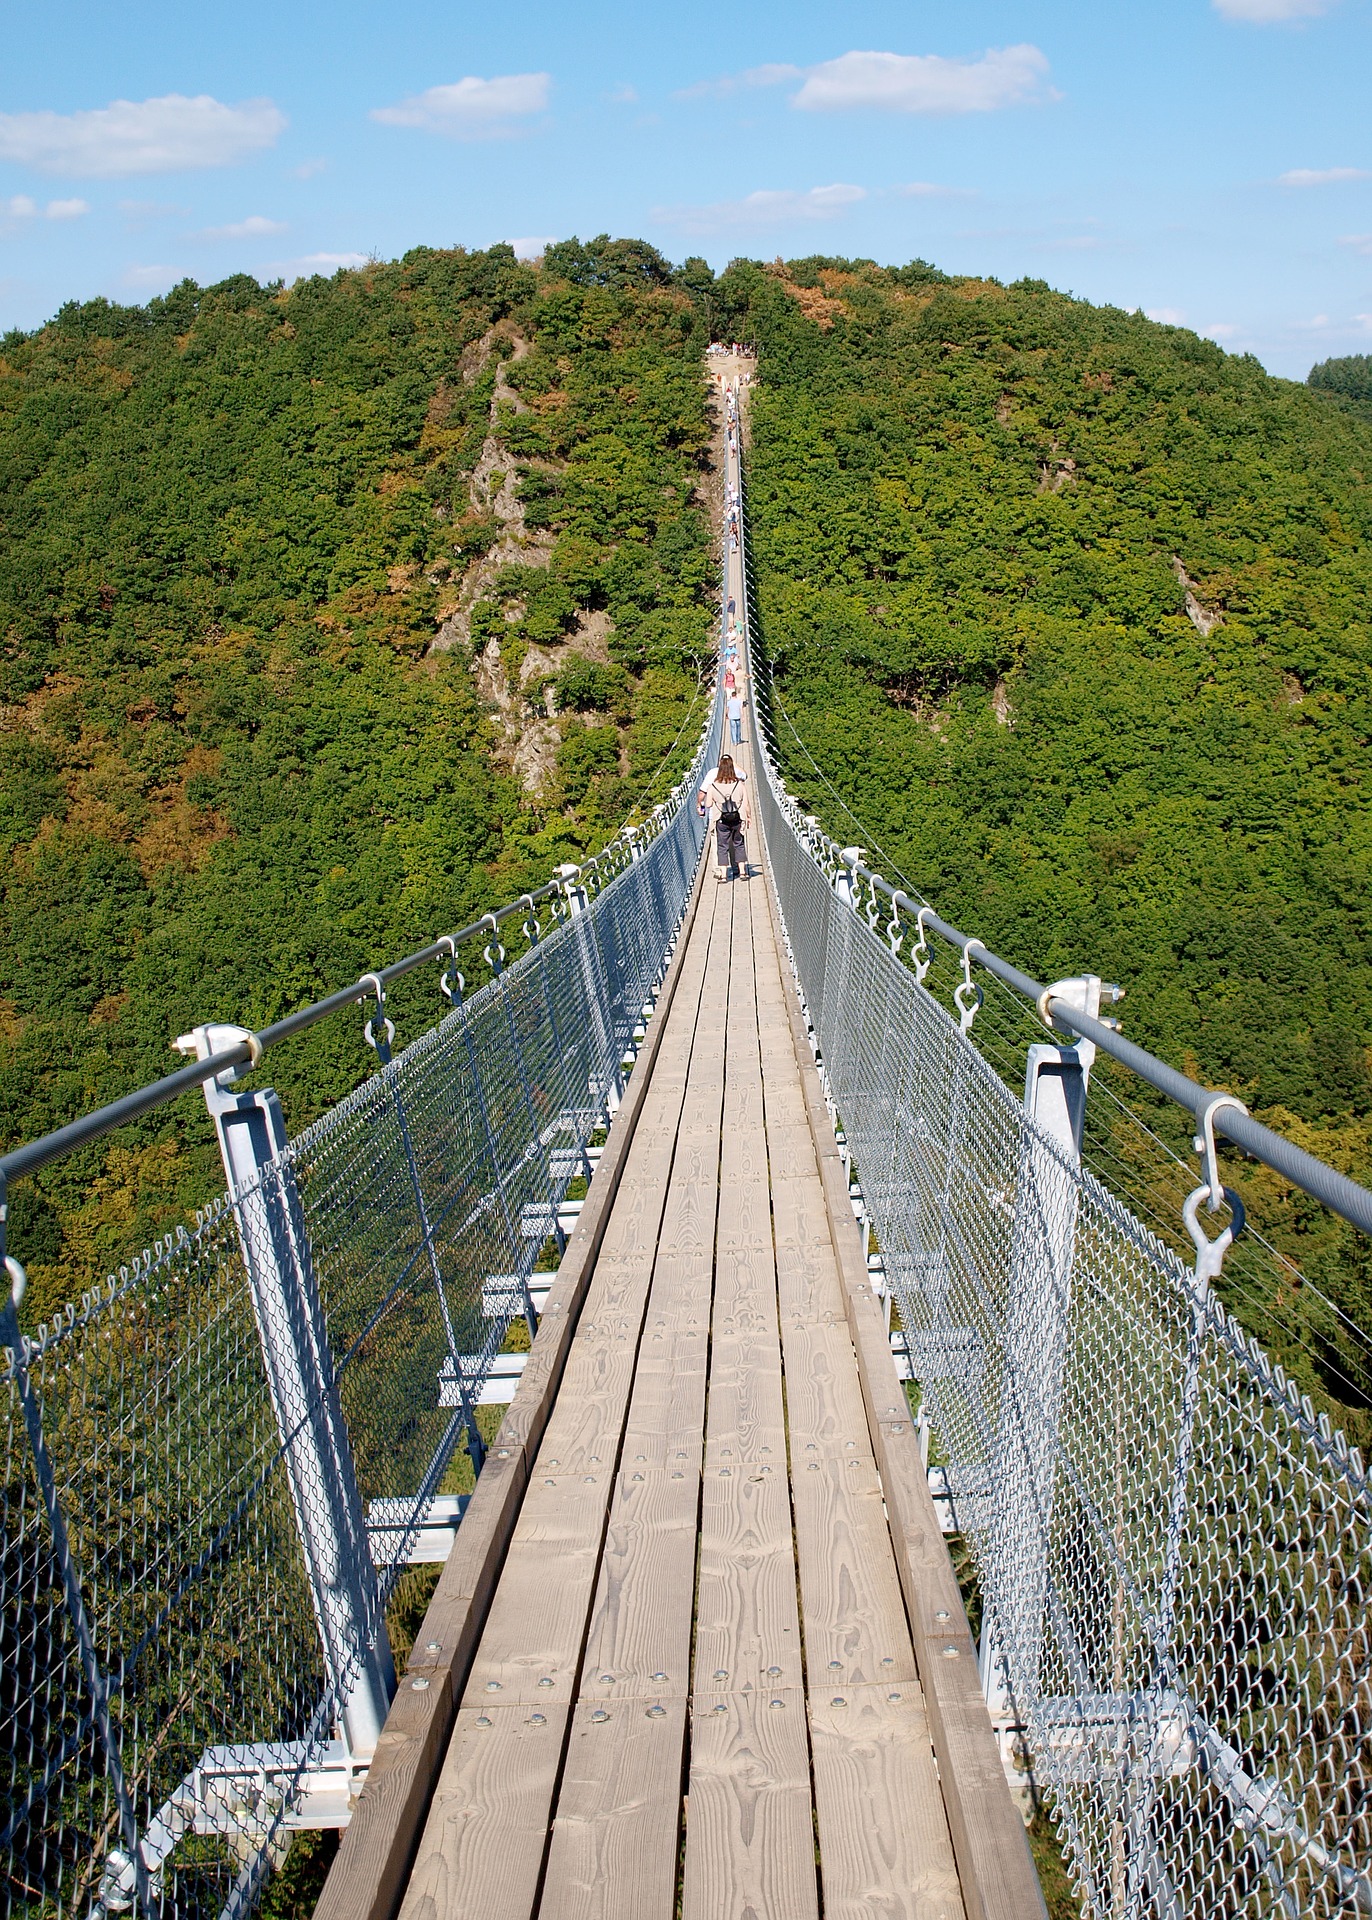 Geierlaybrücke